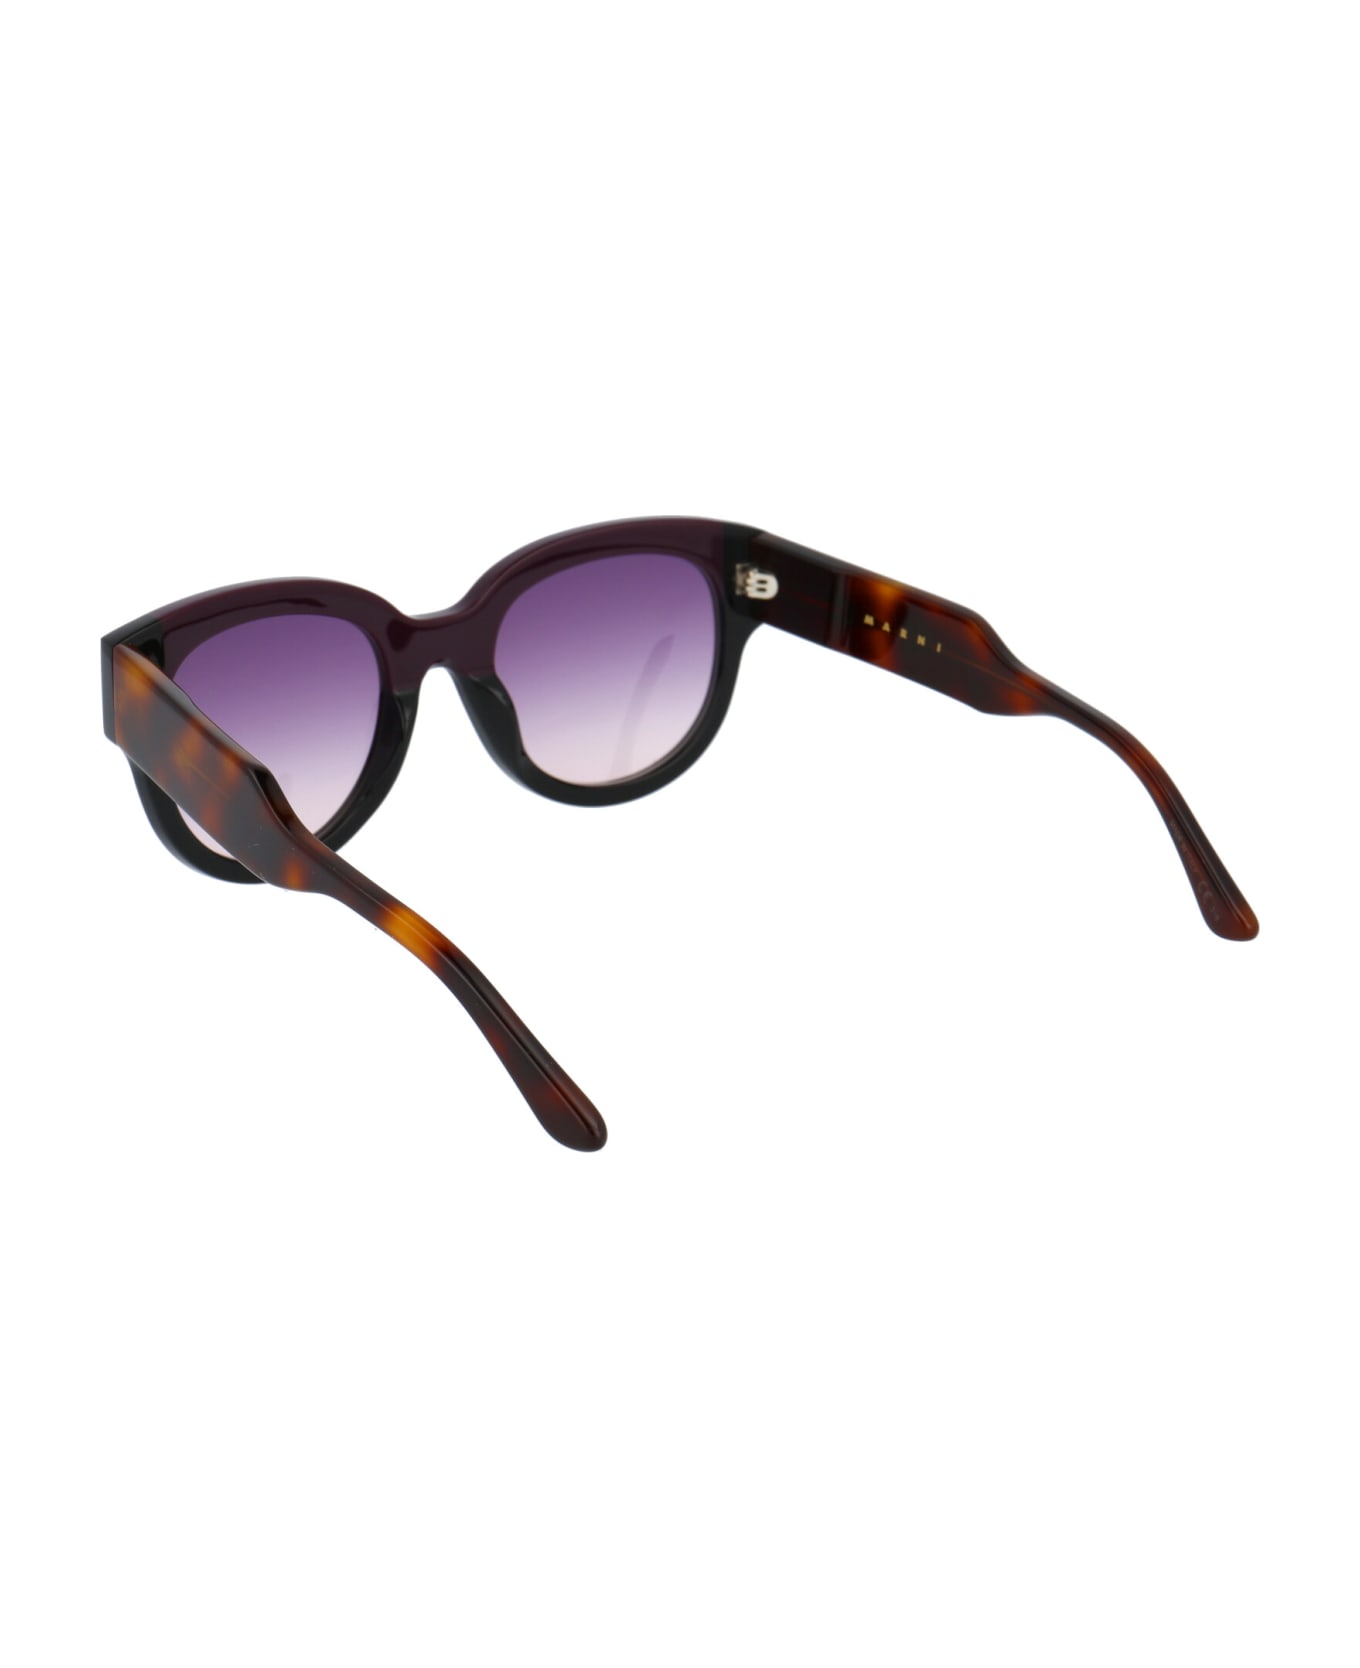 Marni Eyewear Me600s Sunglasses - 600 WINE BLACK